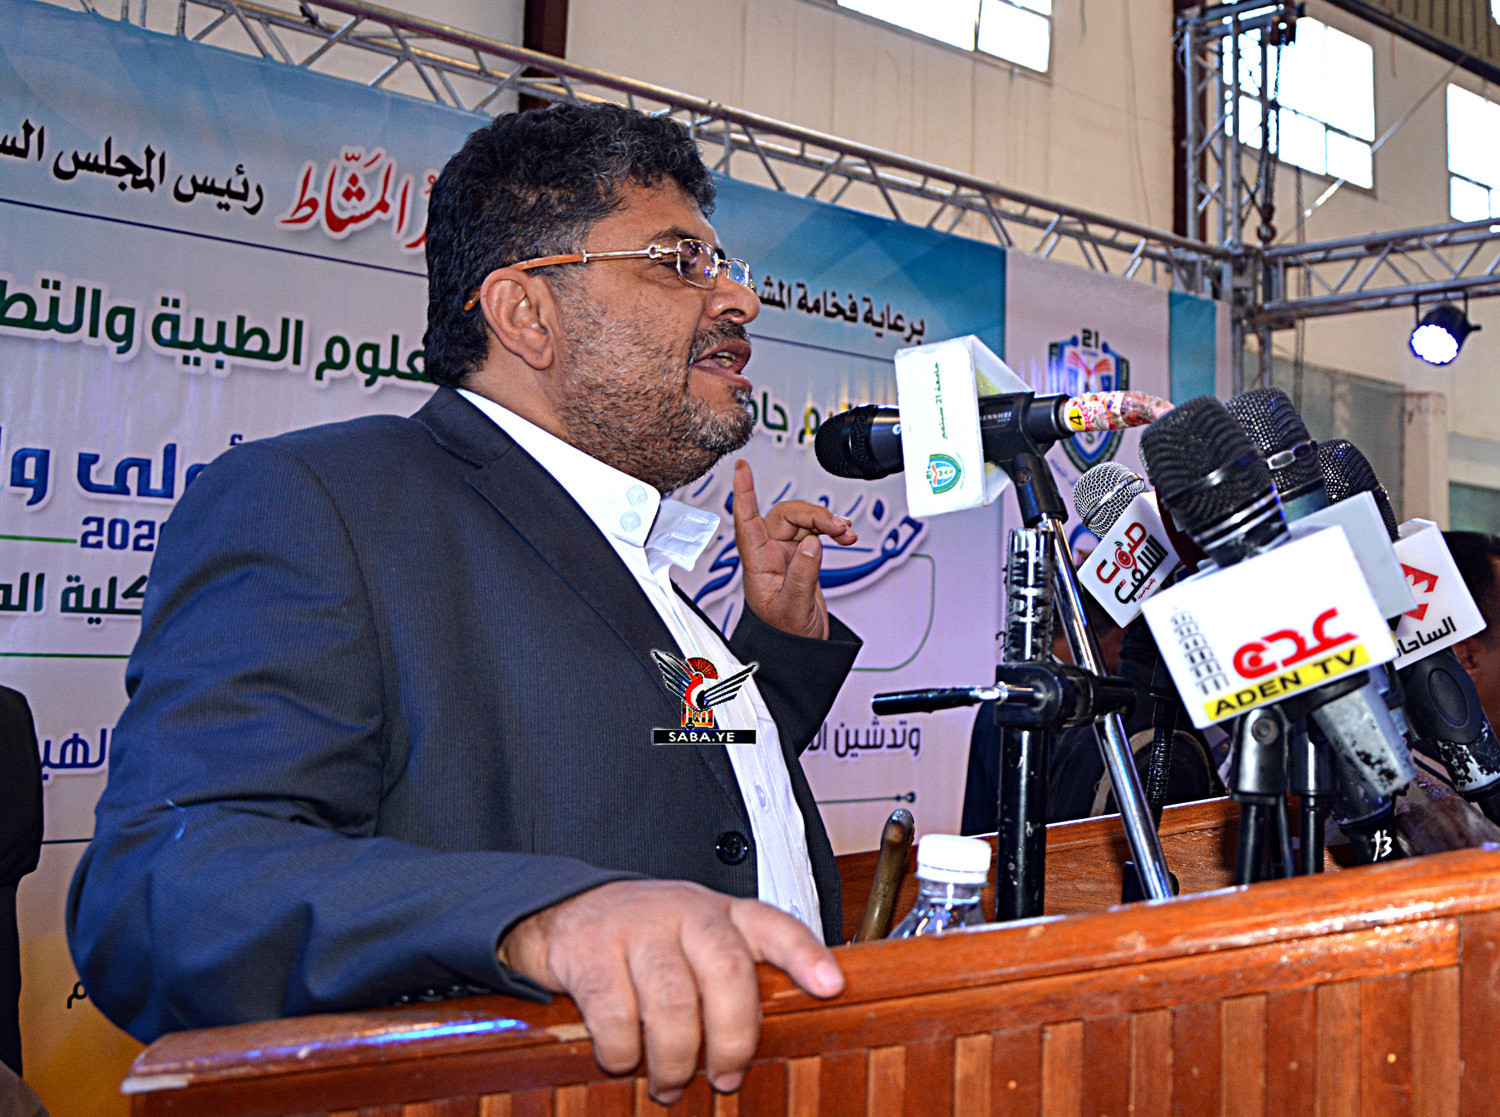 محمد علي الحوثي يؤكد الحرص على الارتقاء بالتعليم الجامعي وتجويد مخرجاته